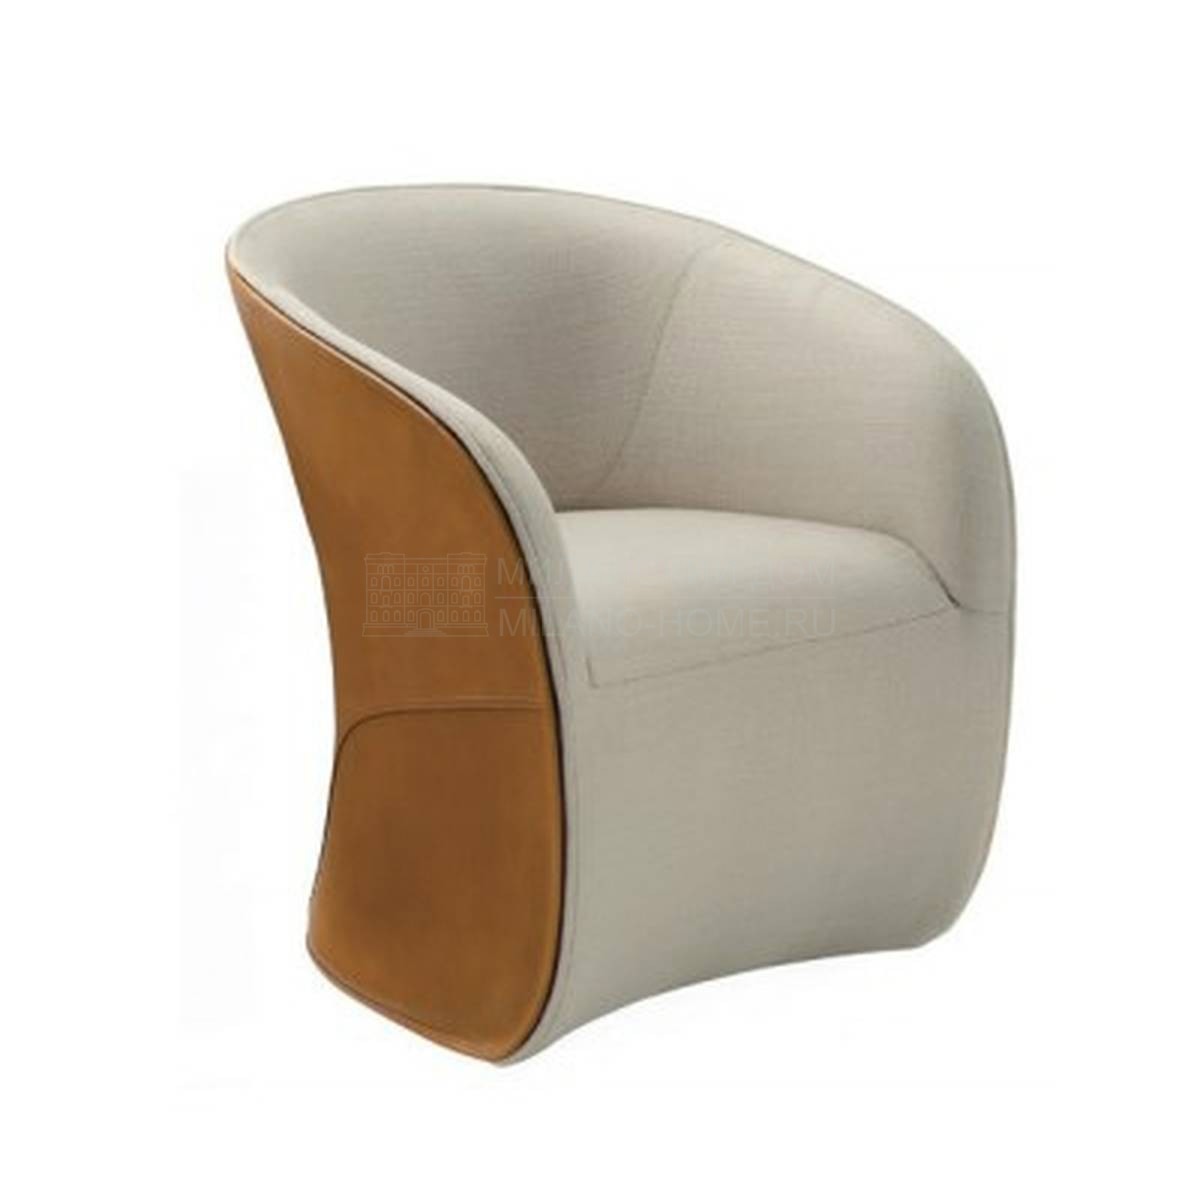 Круглое кресло Calla armchair из Италии фабрики ZANOTTA